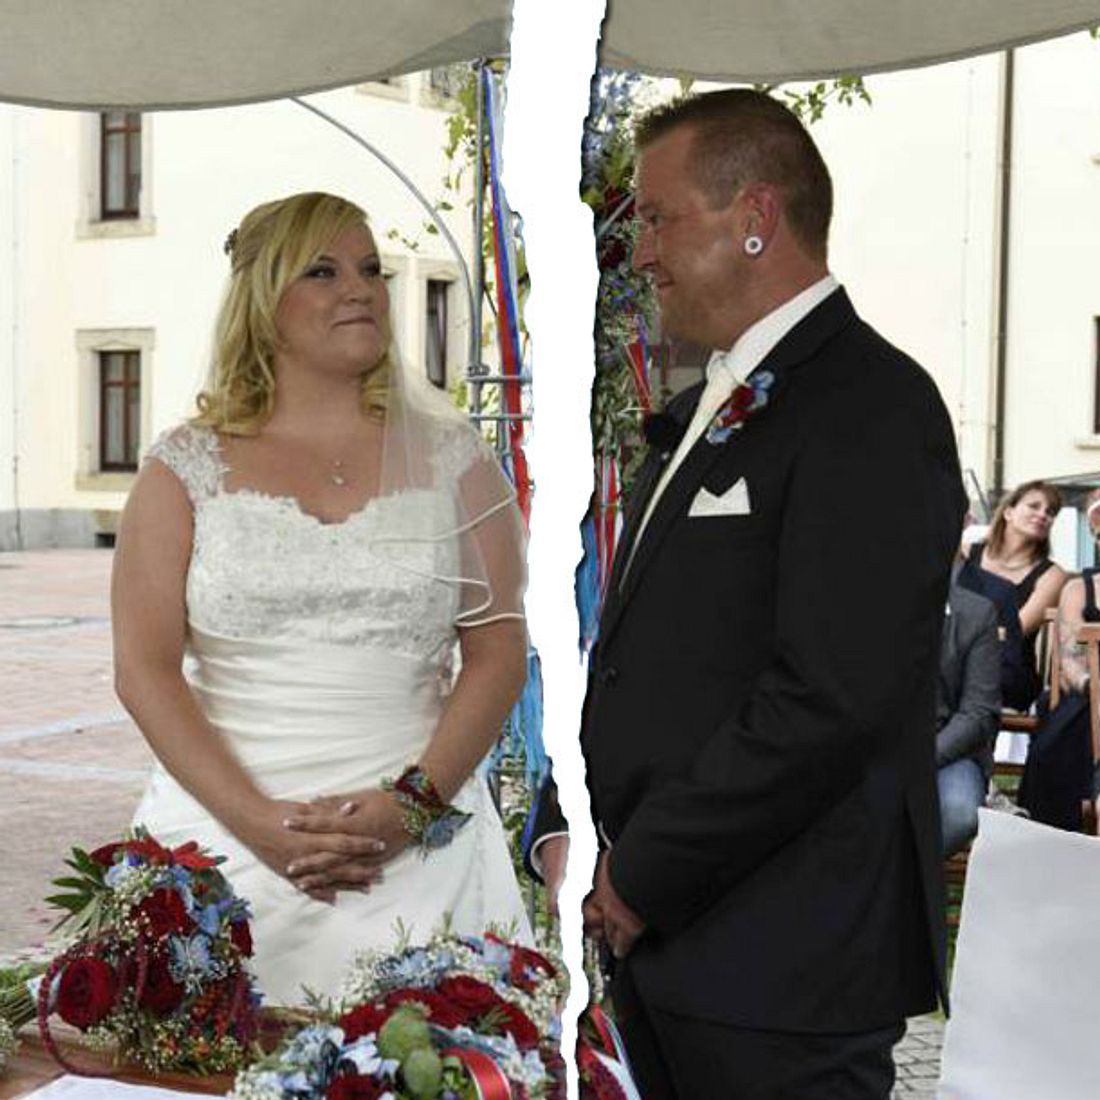 Hochzeit auf den ersten Blick - Marko und Jutta lassen sich scheiden